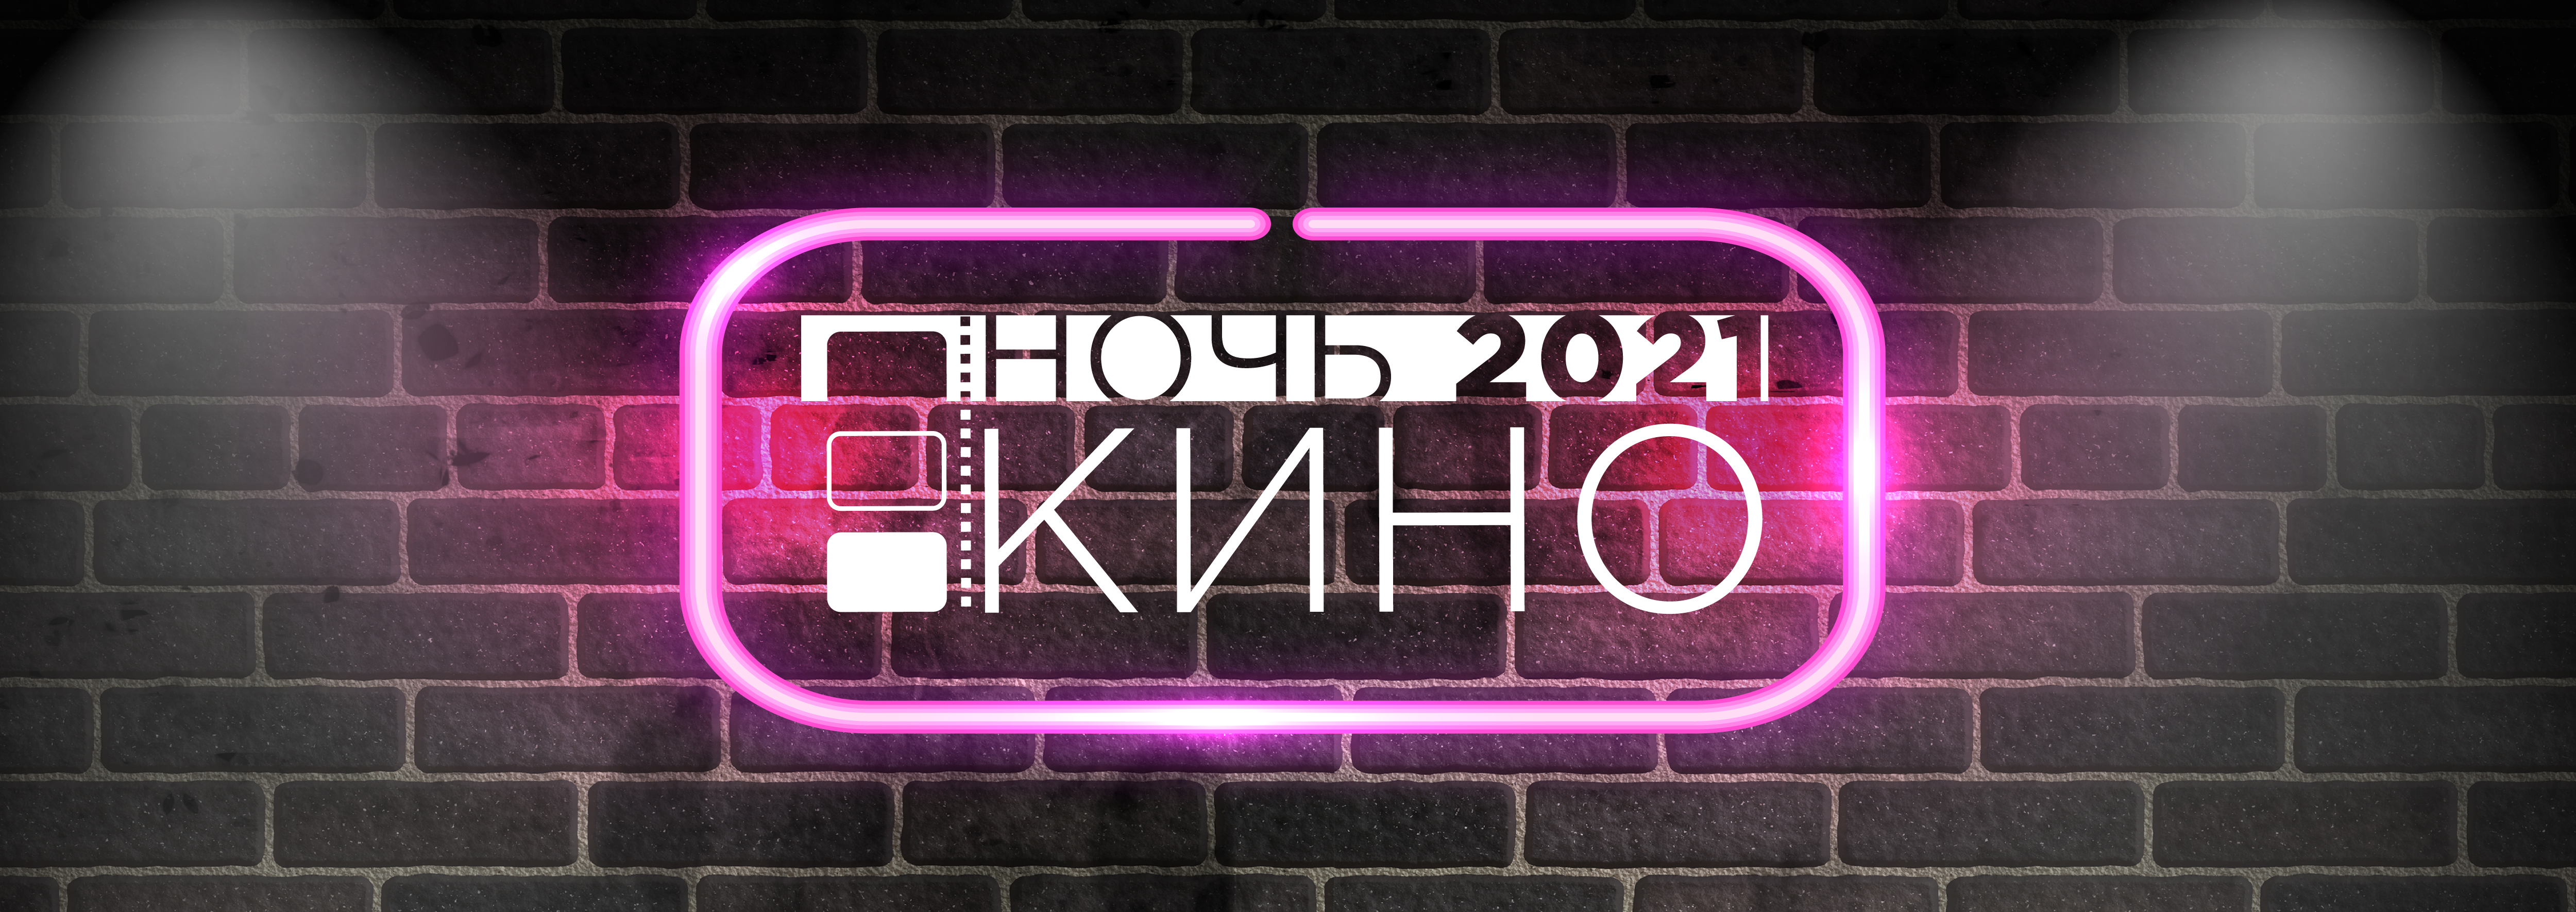 Ночь кино 2021 в Красноярском крае